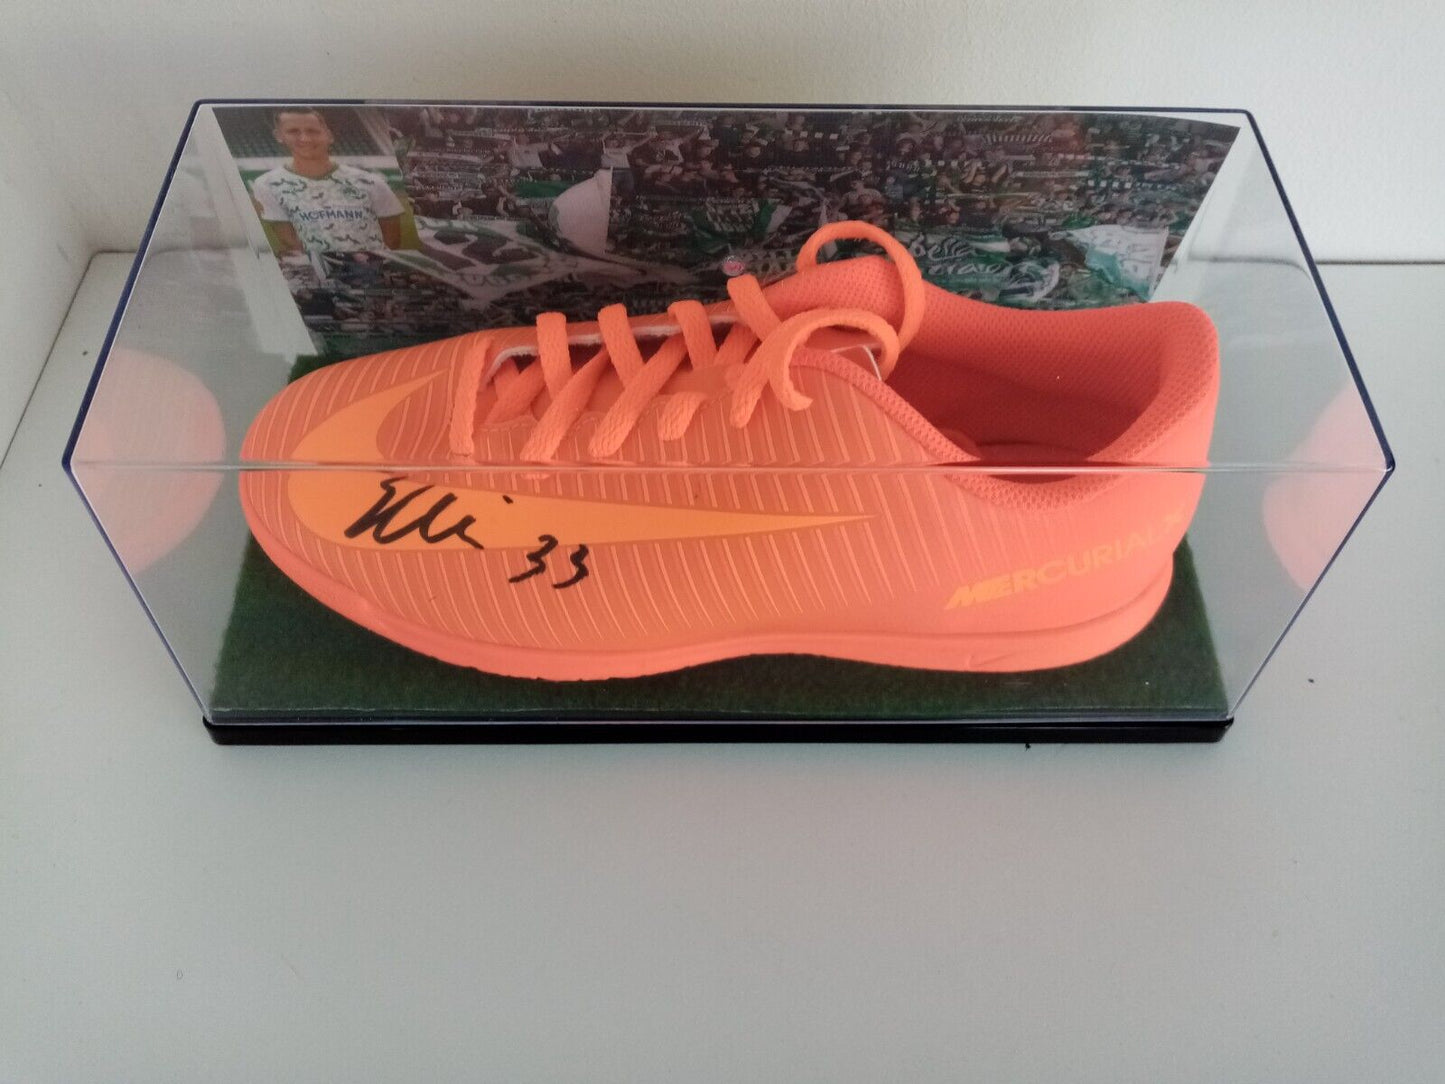 Fußballschuh Paul Seguin signiert Unterschrift Nike Greuther Fürth Neu Autogramm